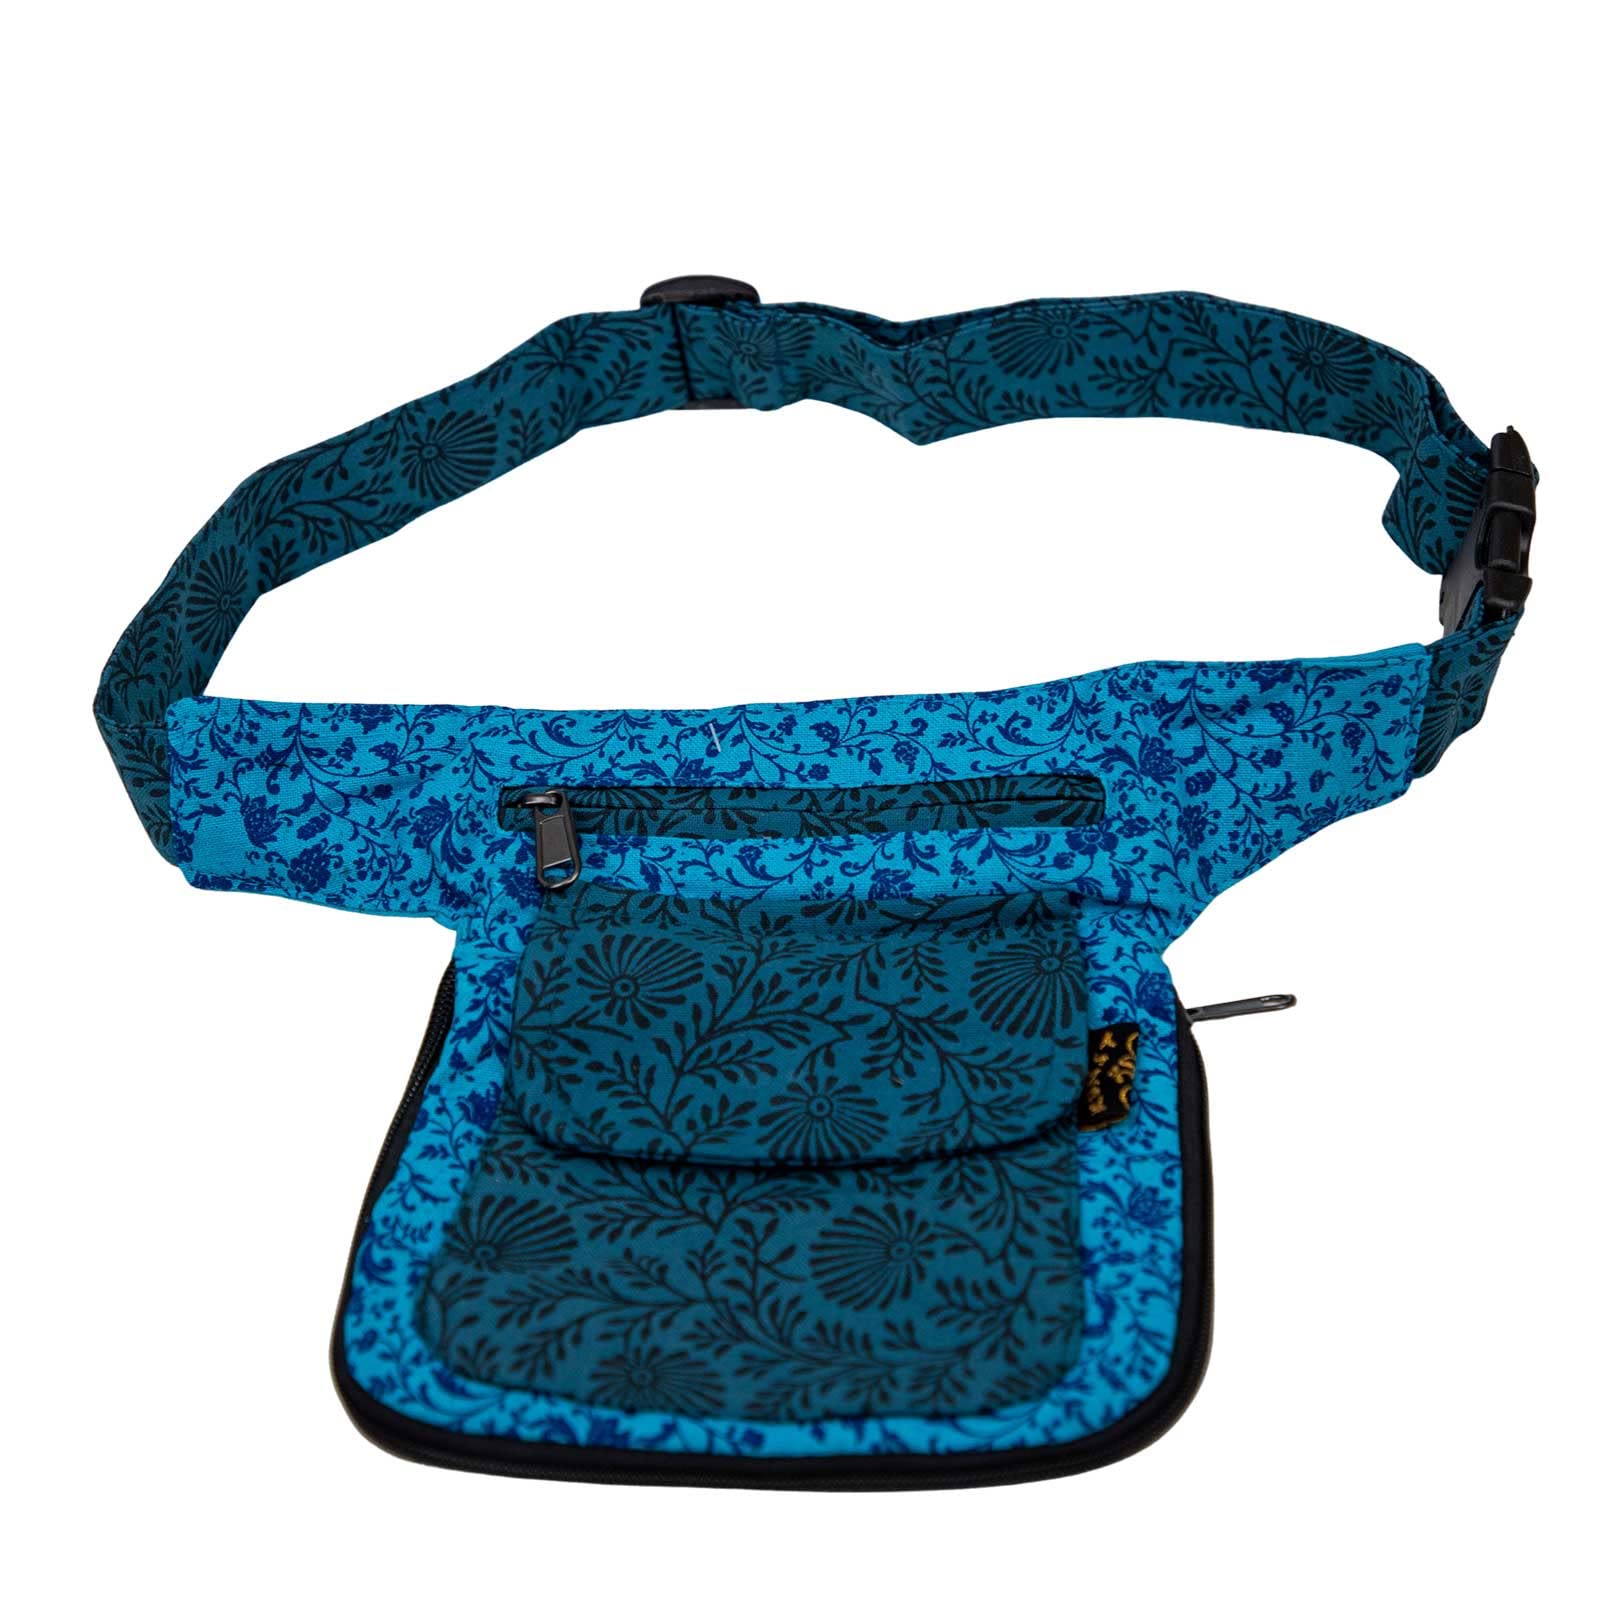 KUNST UND MAGIE Hüfttasche Bauchtasche Gürteltasche Bauchgurt Festivaltasche Gassi-Tasche Goa, Farbe:Blau